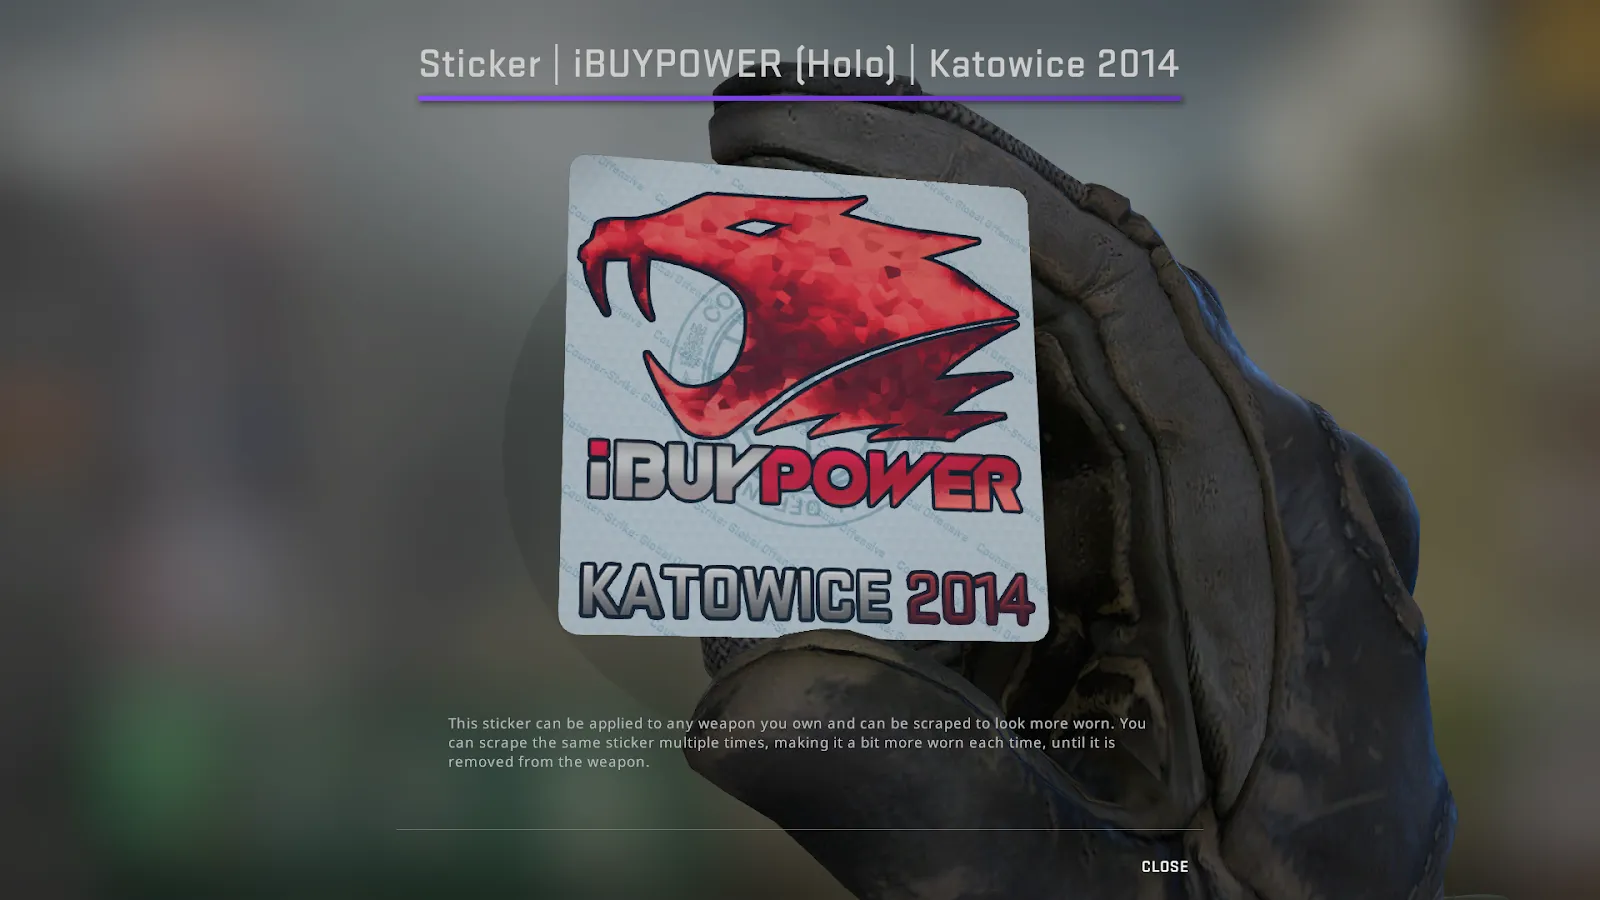 iBUYPOWER Holo Katowice 2014 Sticker